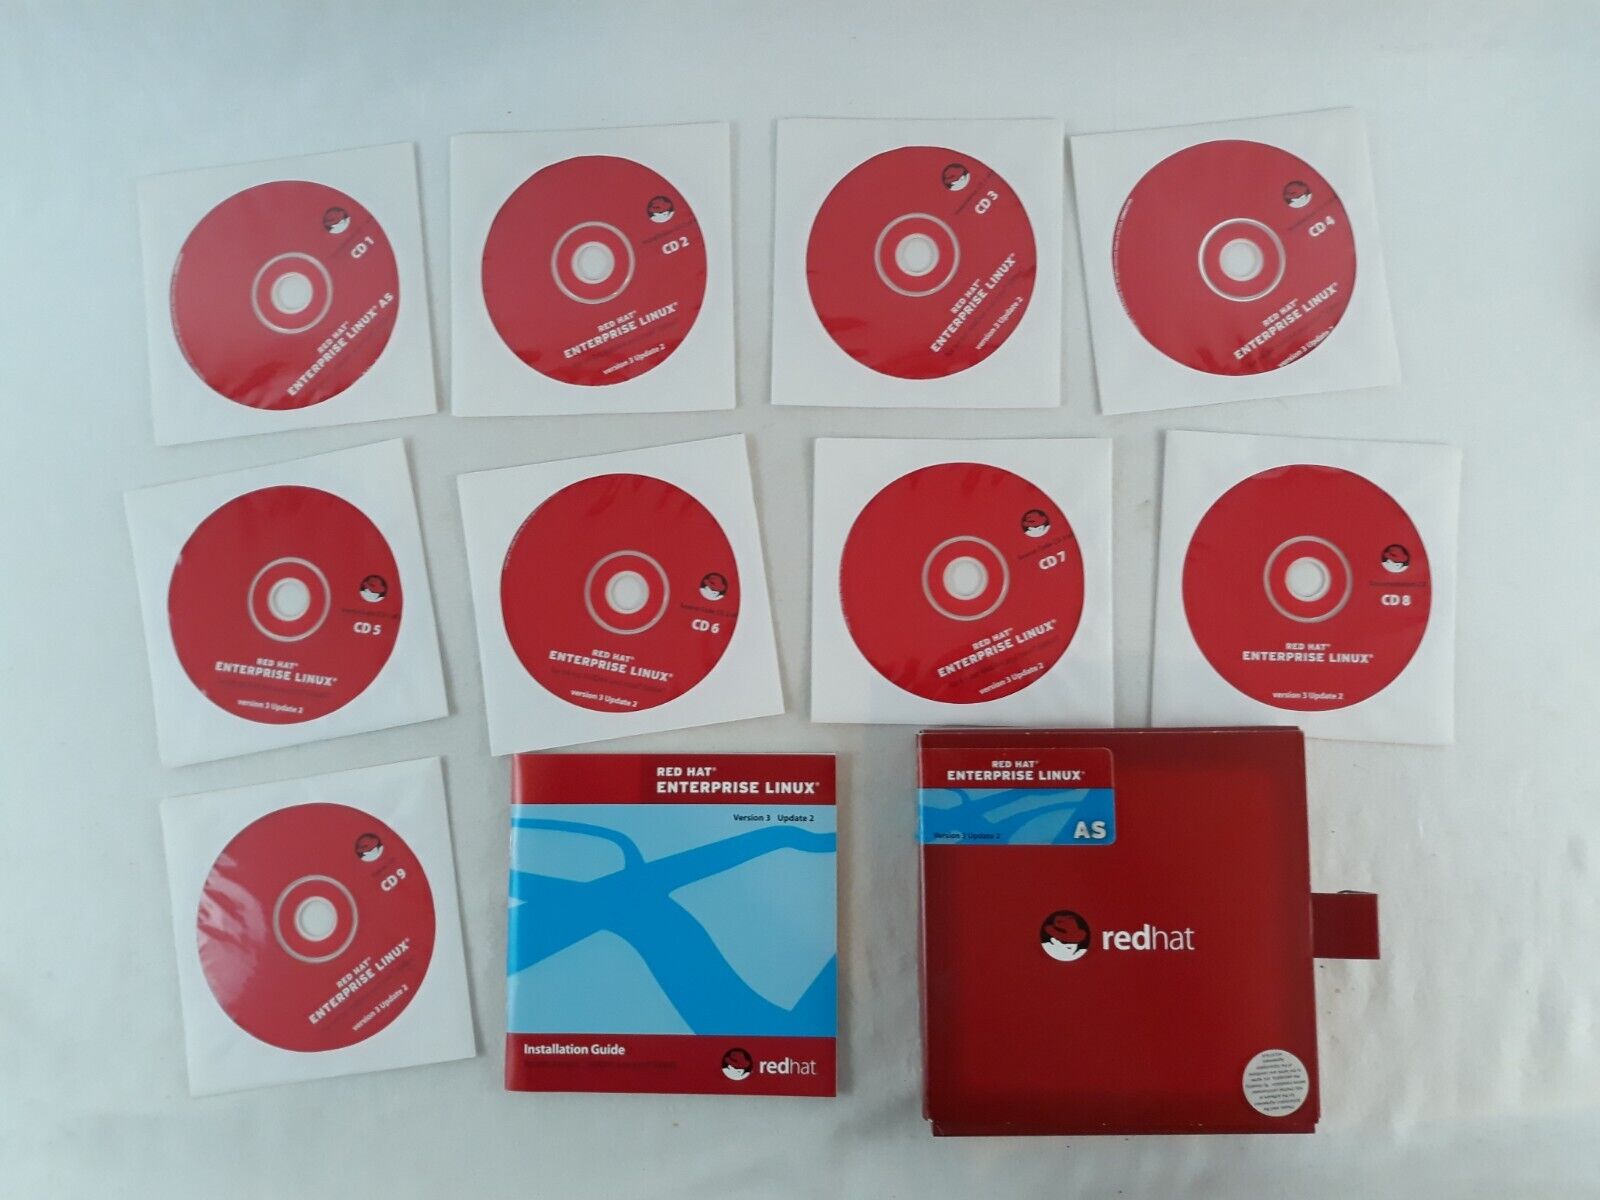 Red Hat Enterprise Linux AS Version 3 Update 2 For 64-bit, AMD64, EM64T On 9 CDs